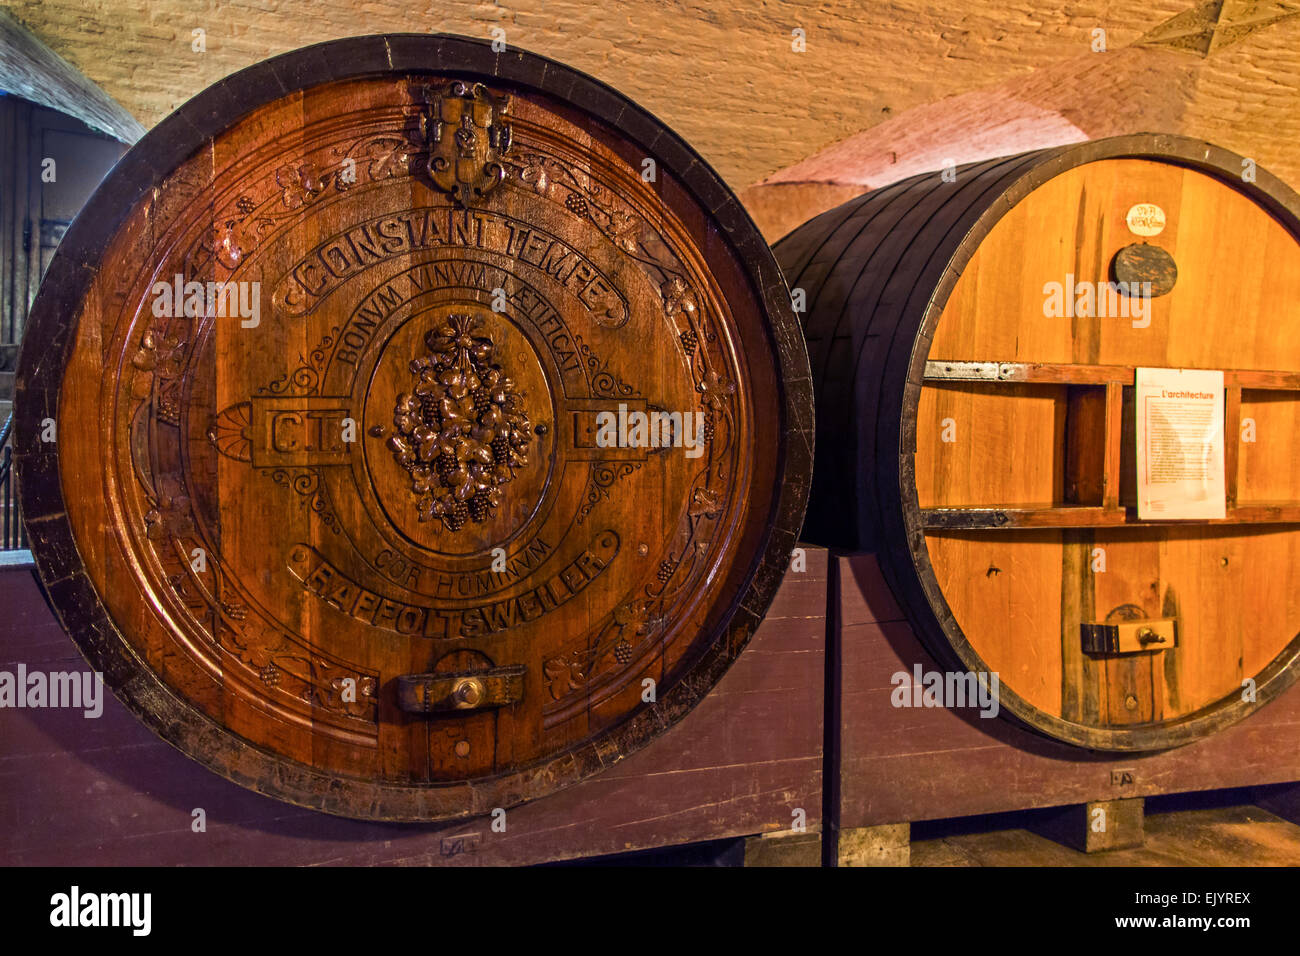 Cuves de vieux vin dans la cave de l'ancien hôpital, Strasbourg, France Banque D'Images